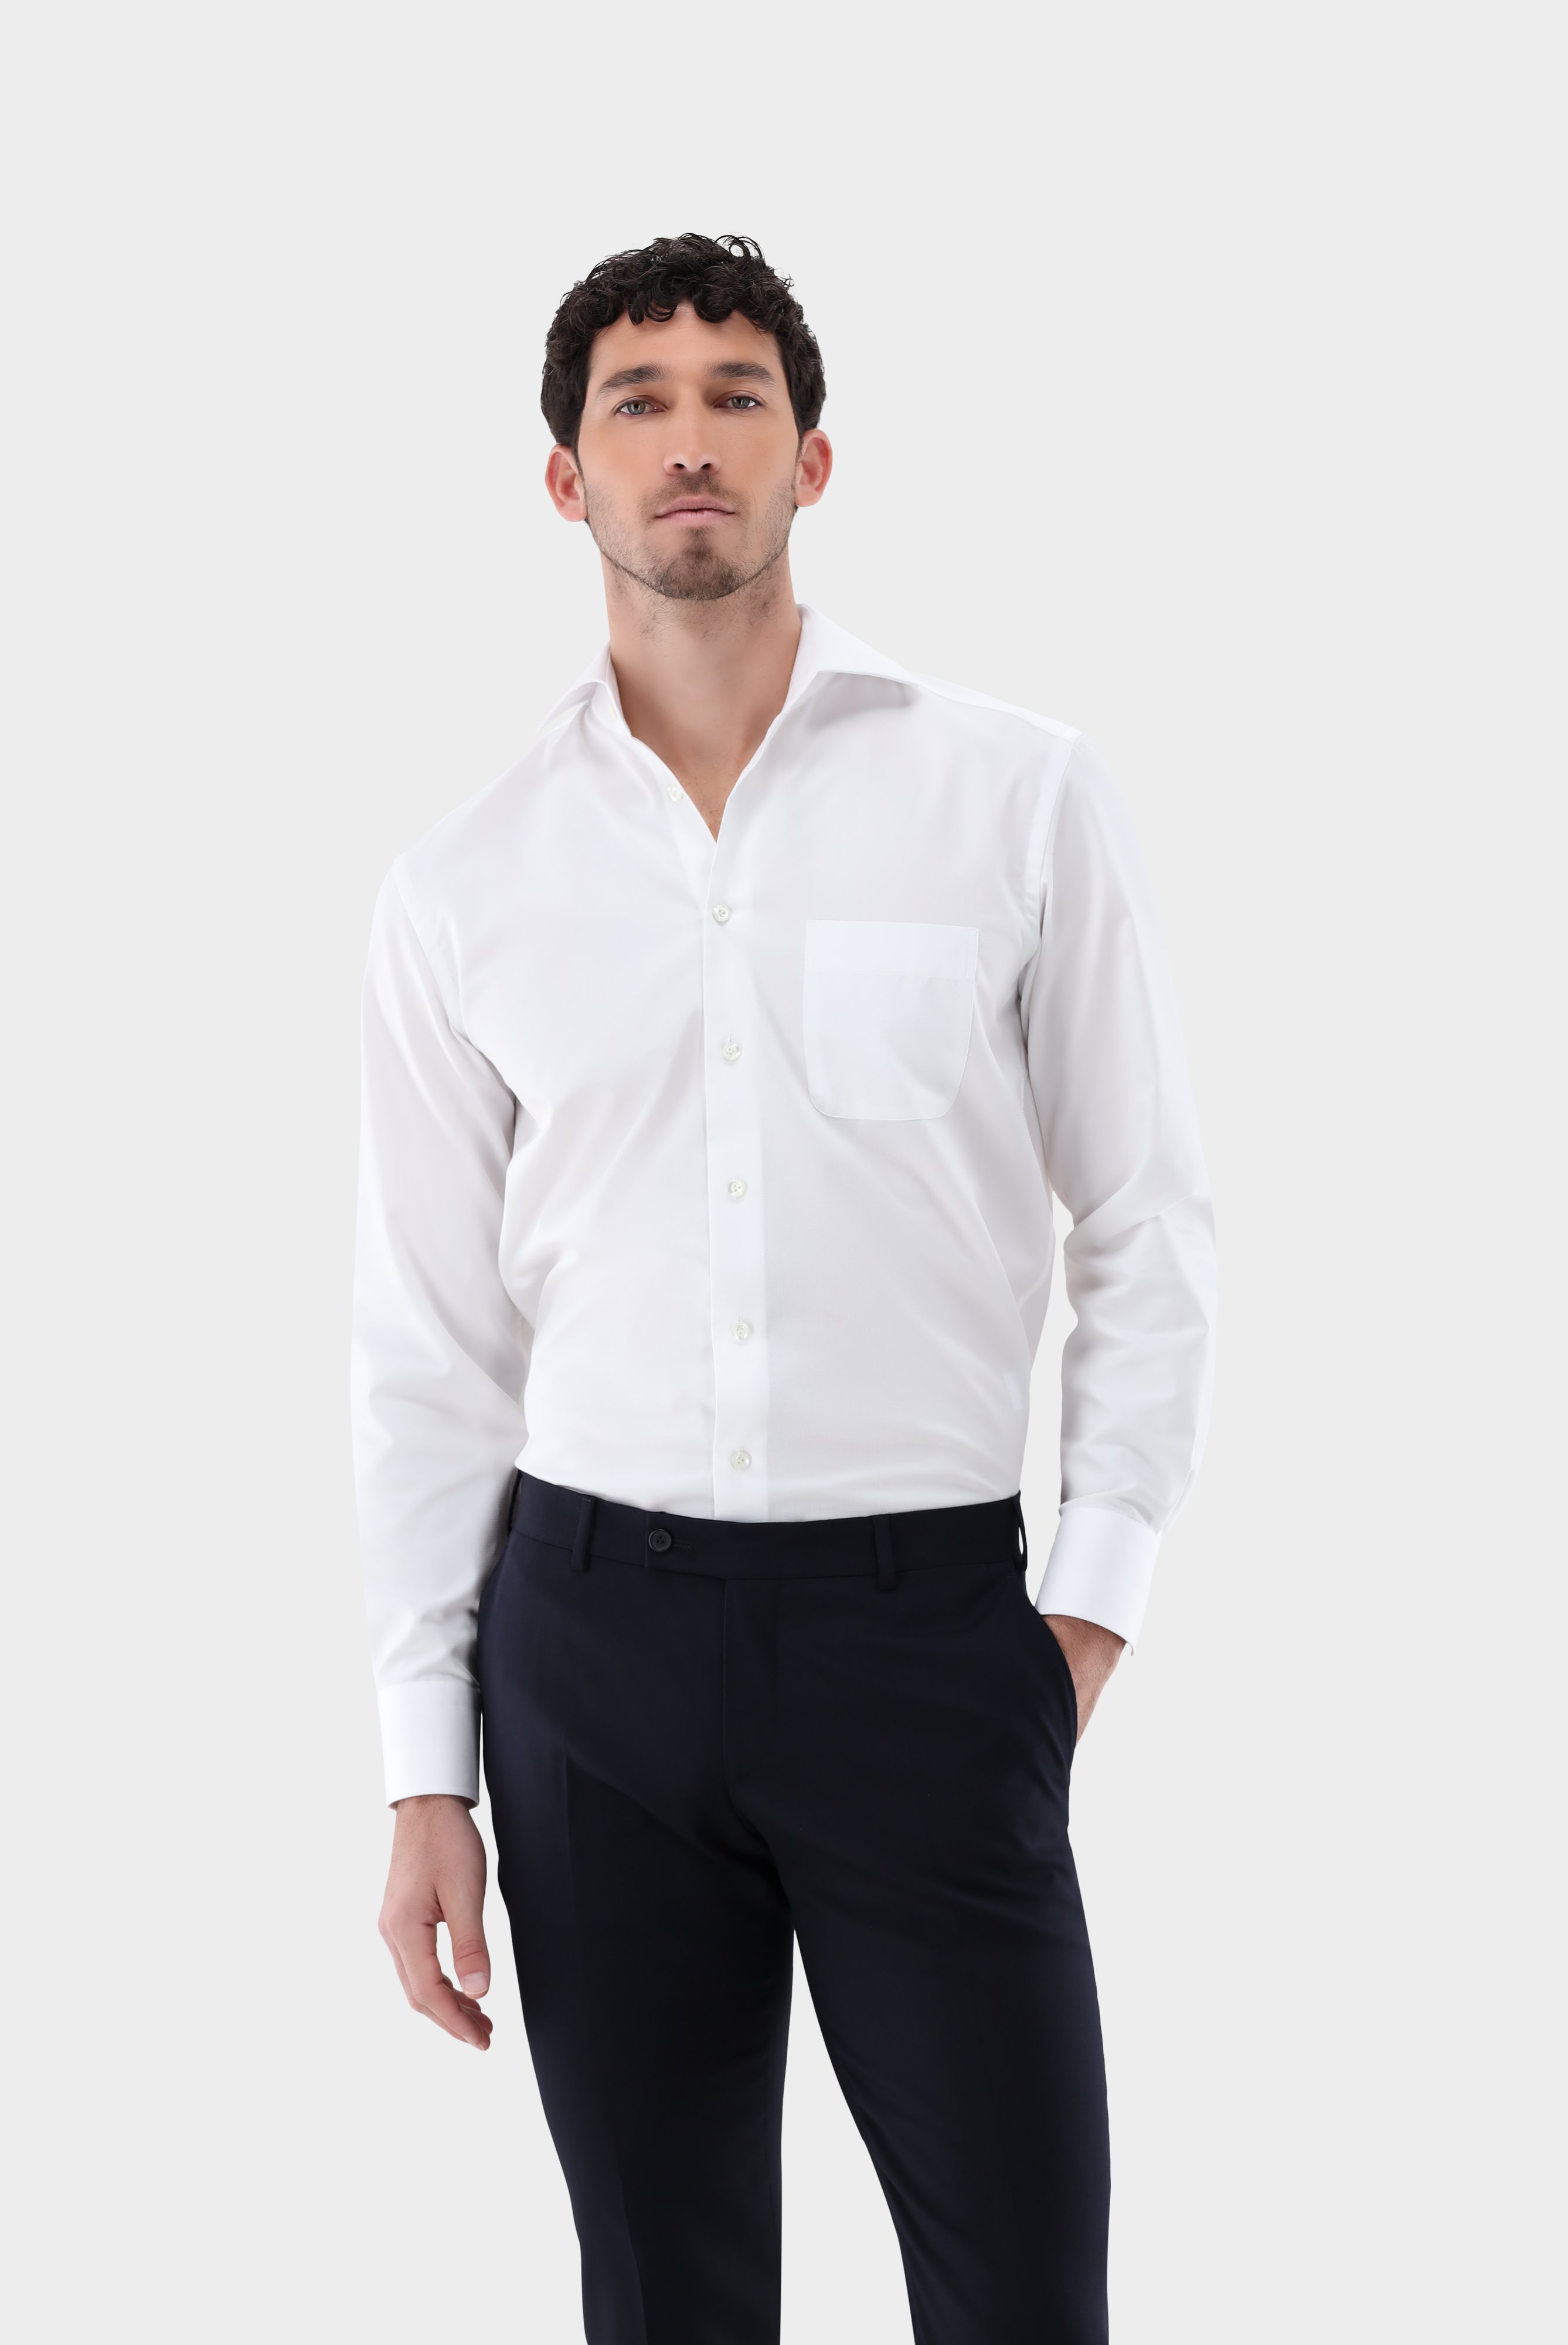 Bügelleichte Hemden+Bügelfreies Twil Hemd mit Struktur Comfort Fit+20.2021.BQ.150301.000.45